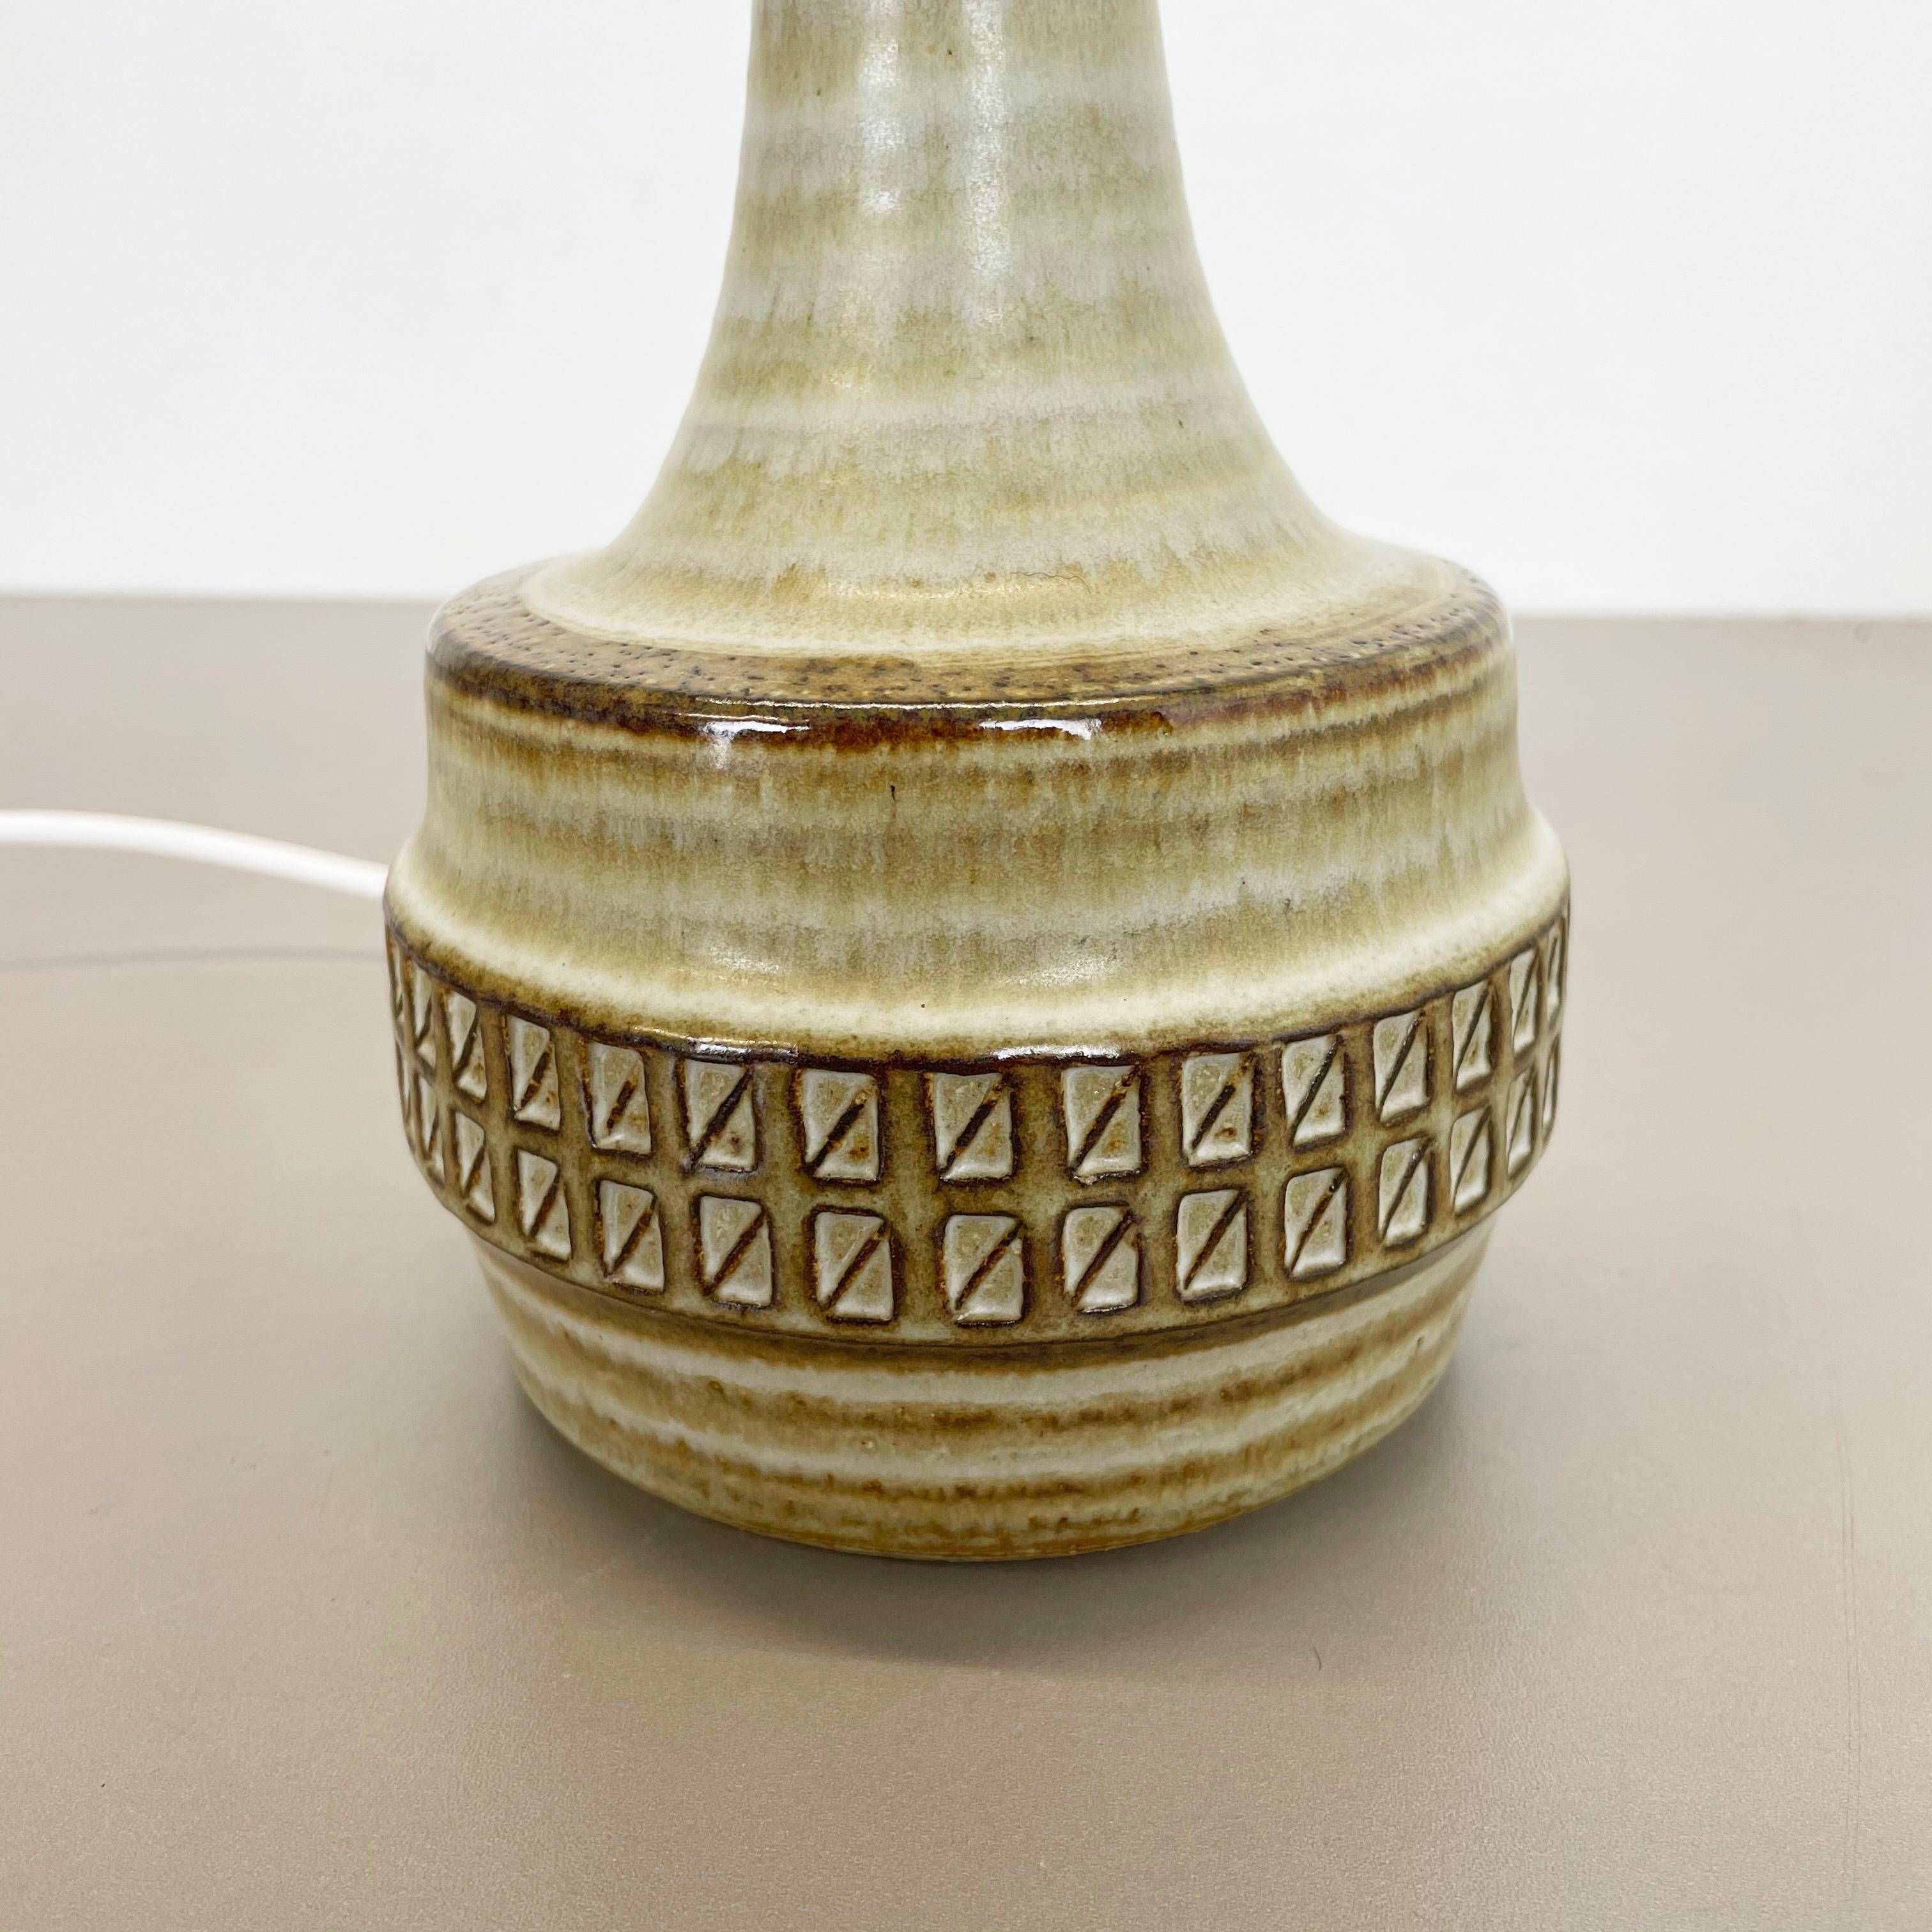 Ceramic Studio Pottery Table Light base by Joseph Simon for SOHOLM, Denmark 1970 For Sale 3